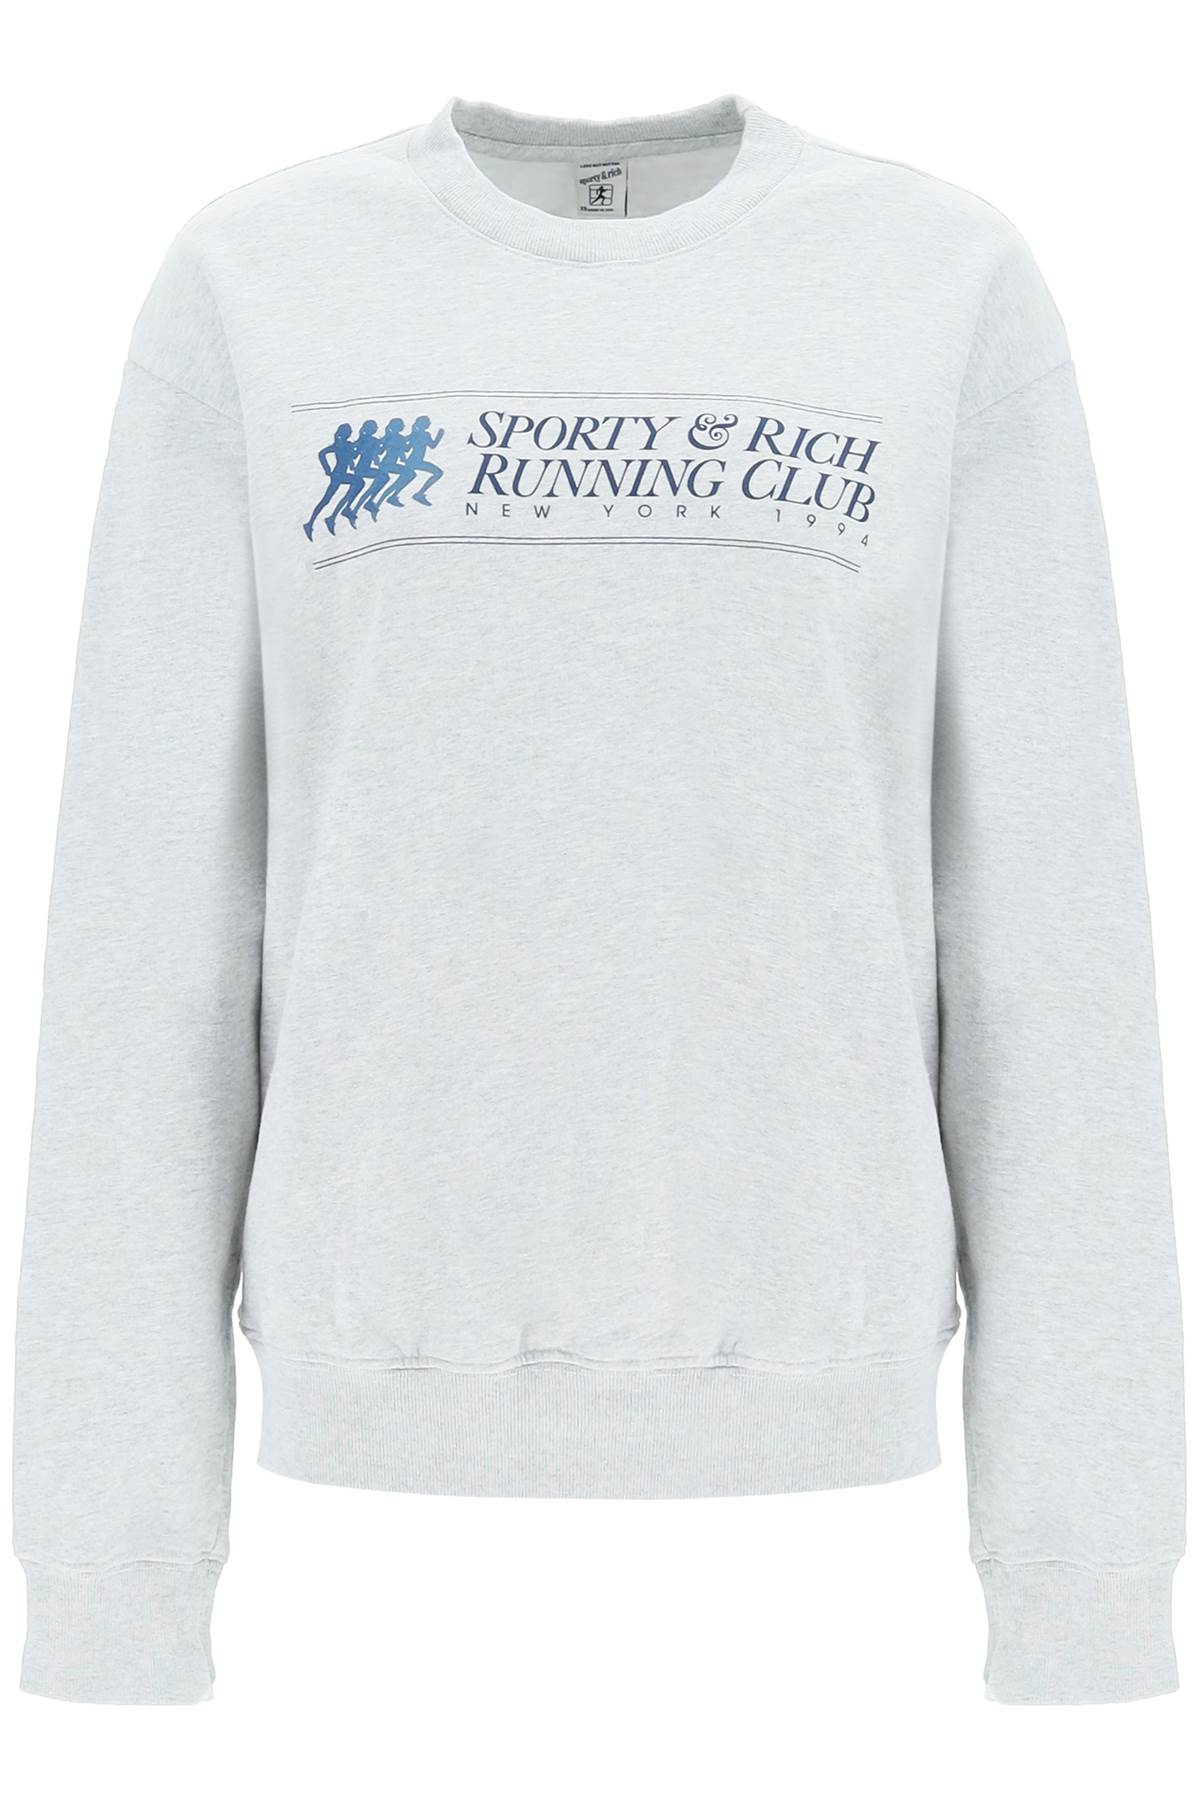 Sporty & Rich running Club Crewneck Sweatshirt